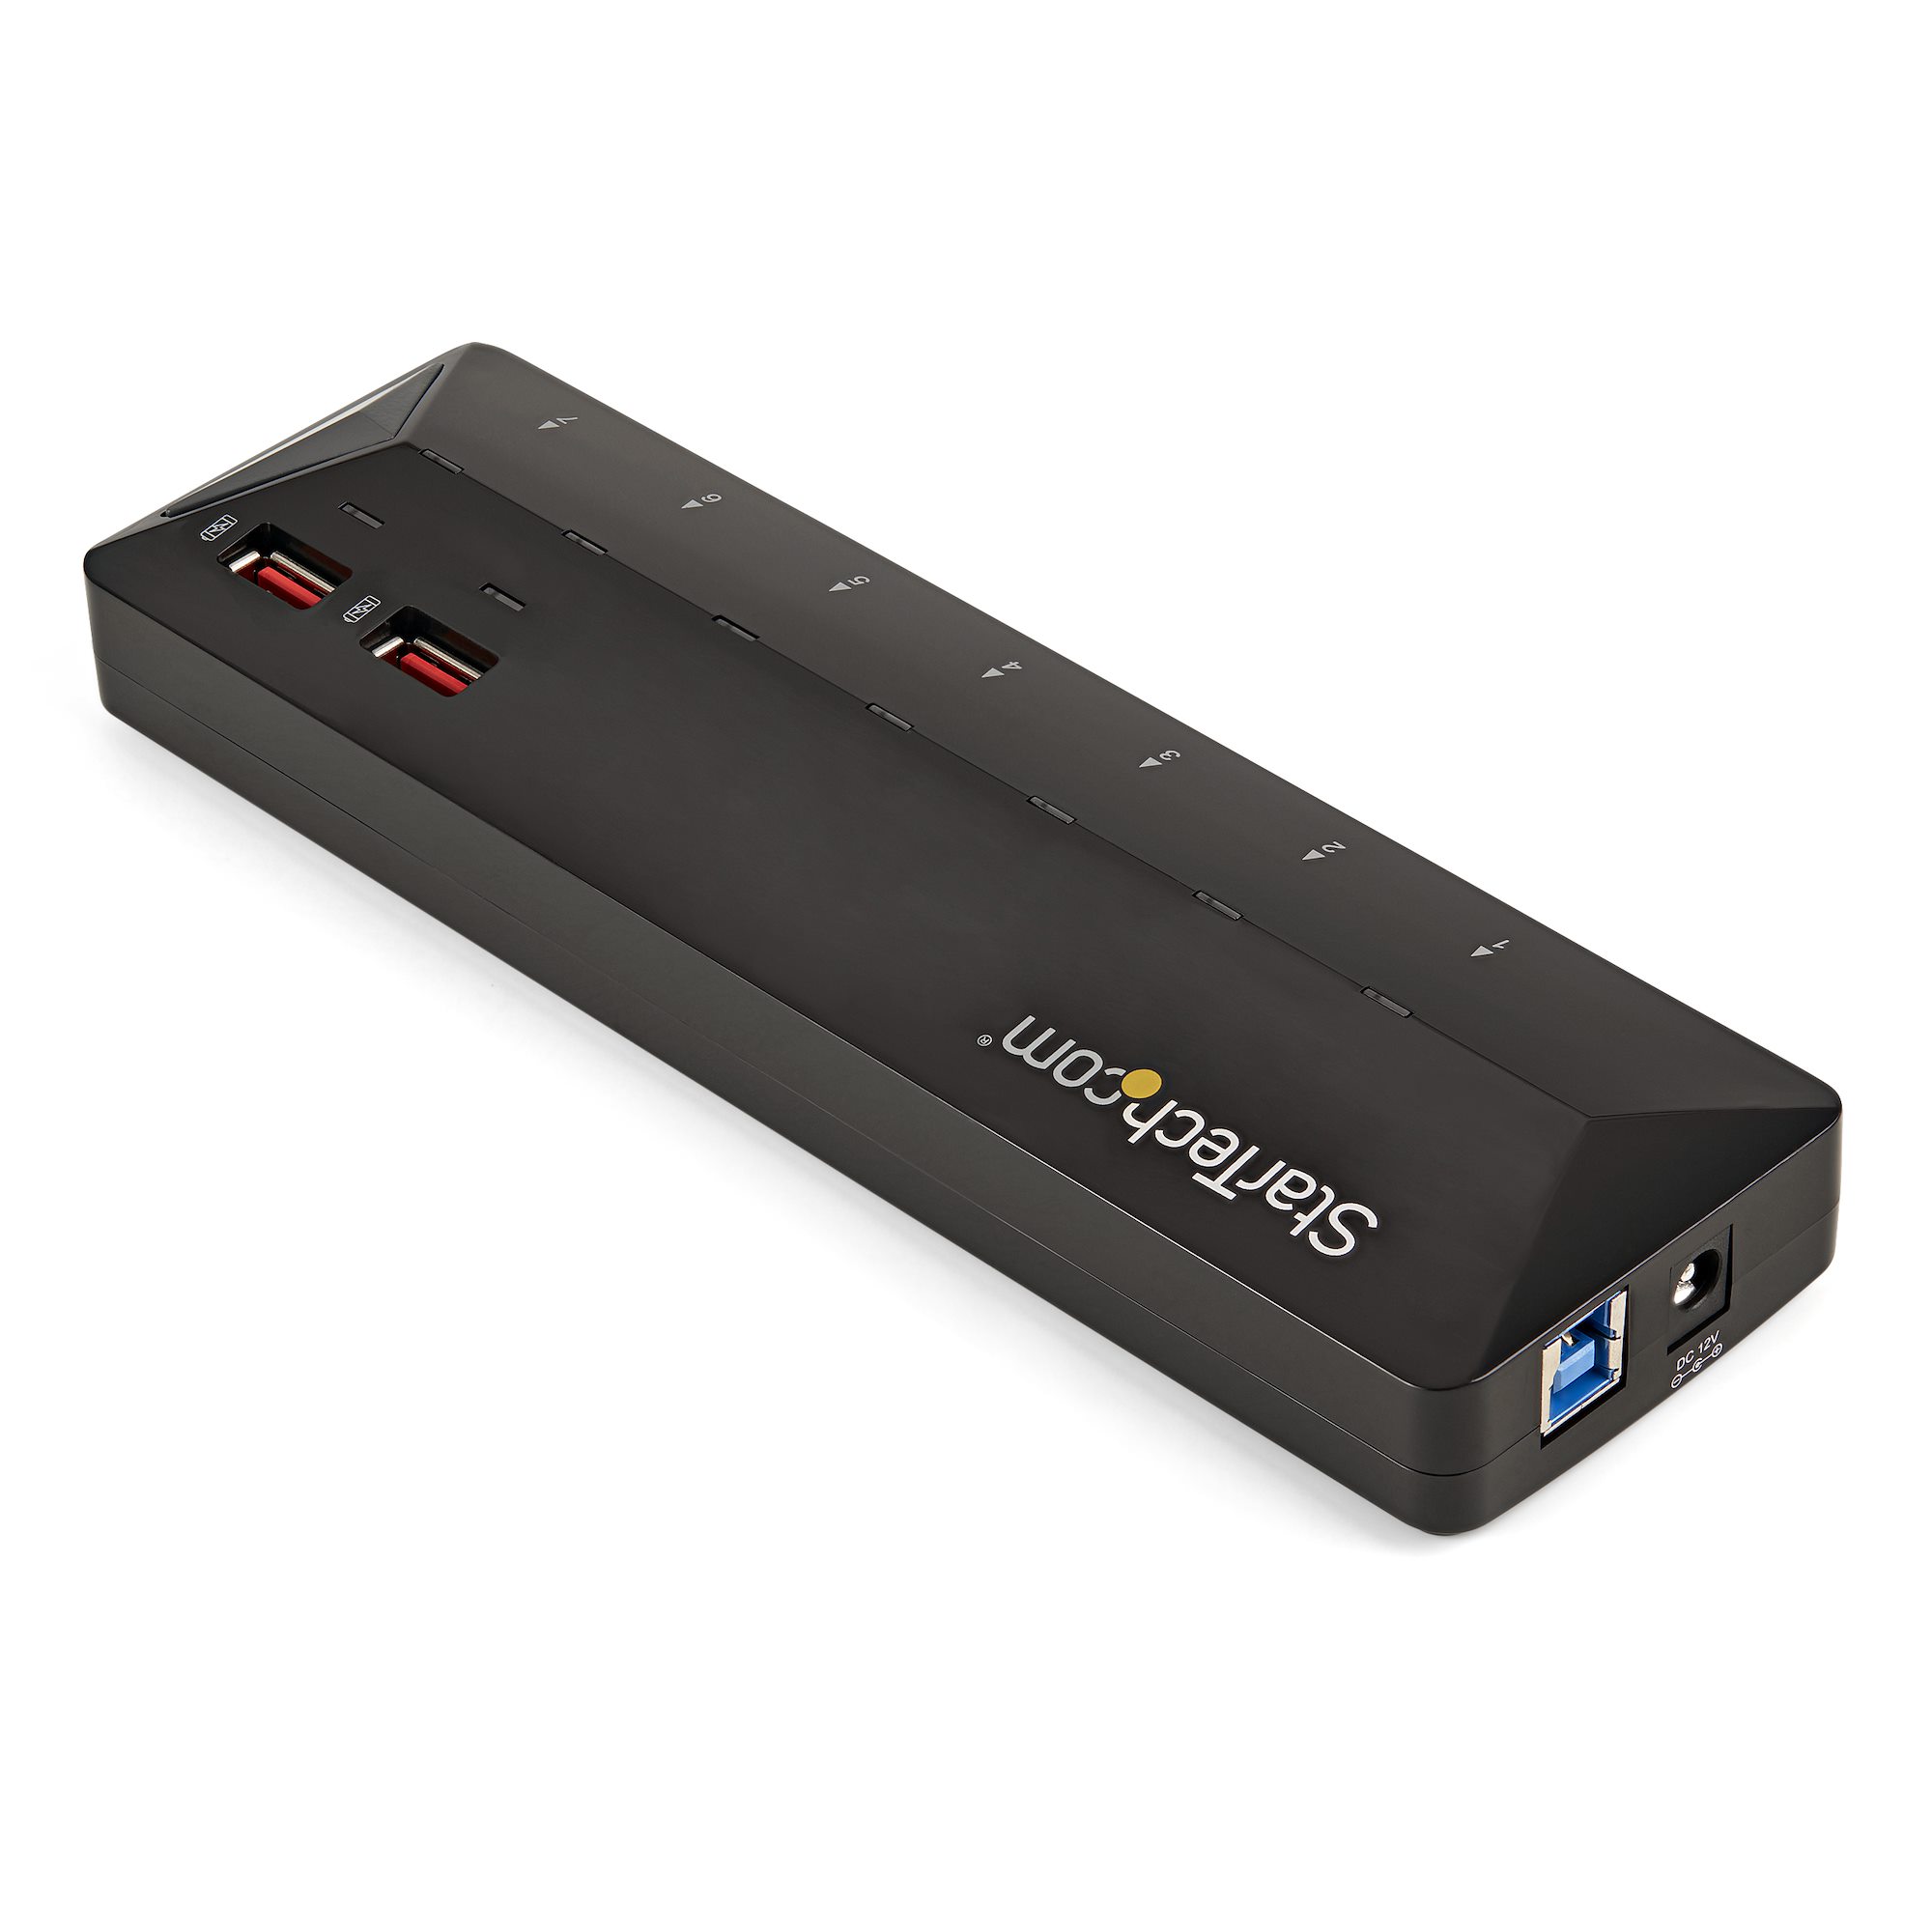 7ポート USB 3.0ハブ 急速充電専用ポート搭載(2ポート x 2.4A) ST93007U2C-